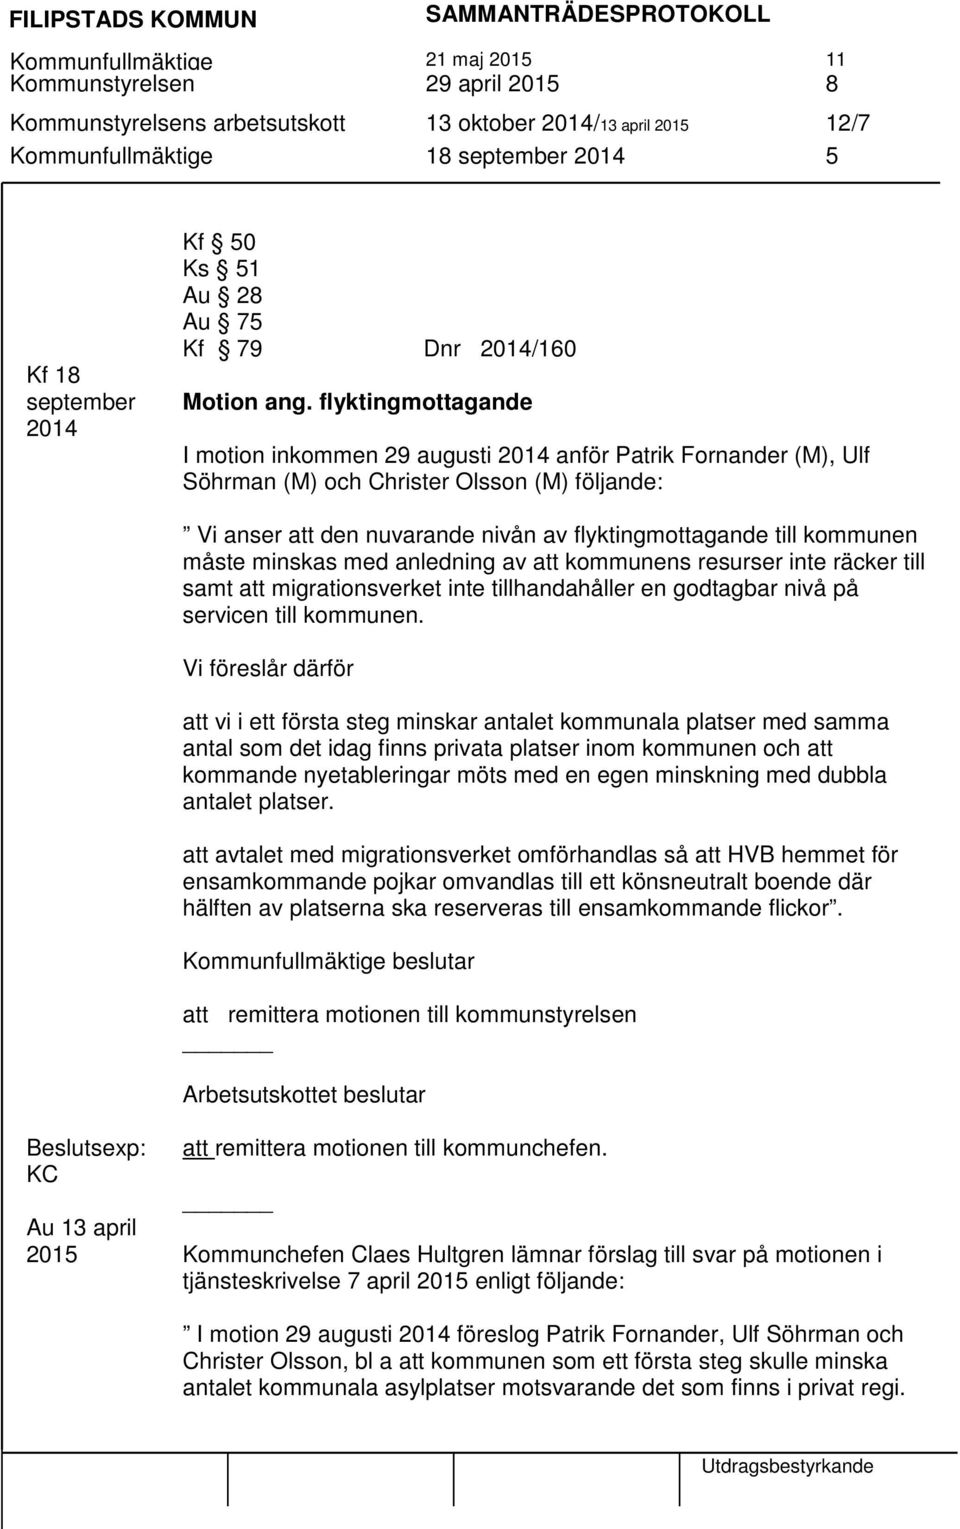 flyktingmottagande I motion inkommen 29 augusti 2014 anför Patrik Fornander (M), Ulf Söhrman (M) och Christer Olsson (M) följande: Vi anser att den nuvarande nivån av flyktingmottagande till kommunen